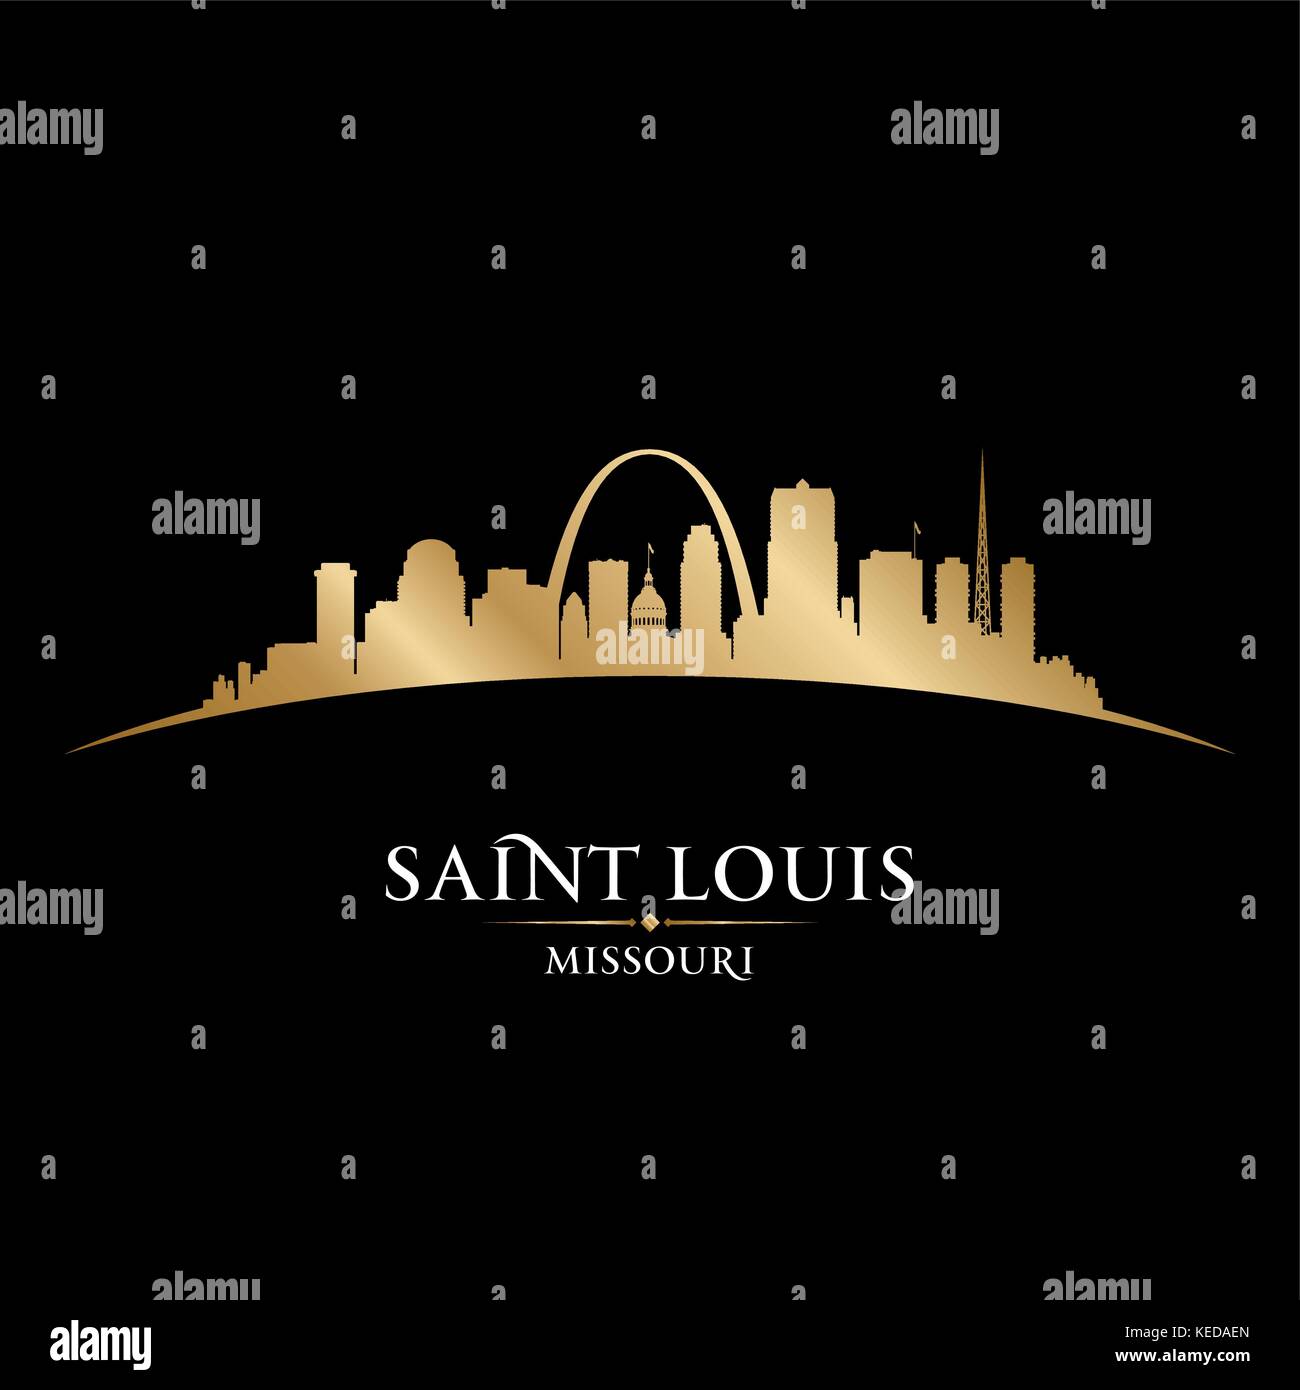 Saint Louis Missouri city skyline silhouette. Vector illustration Stock Vector